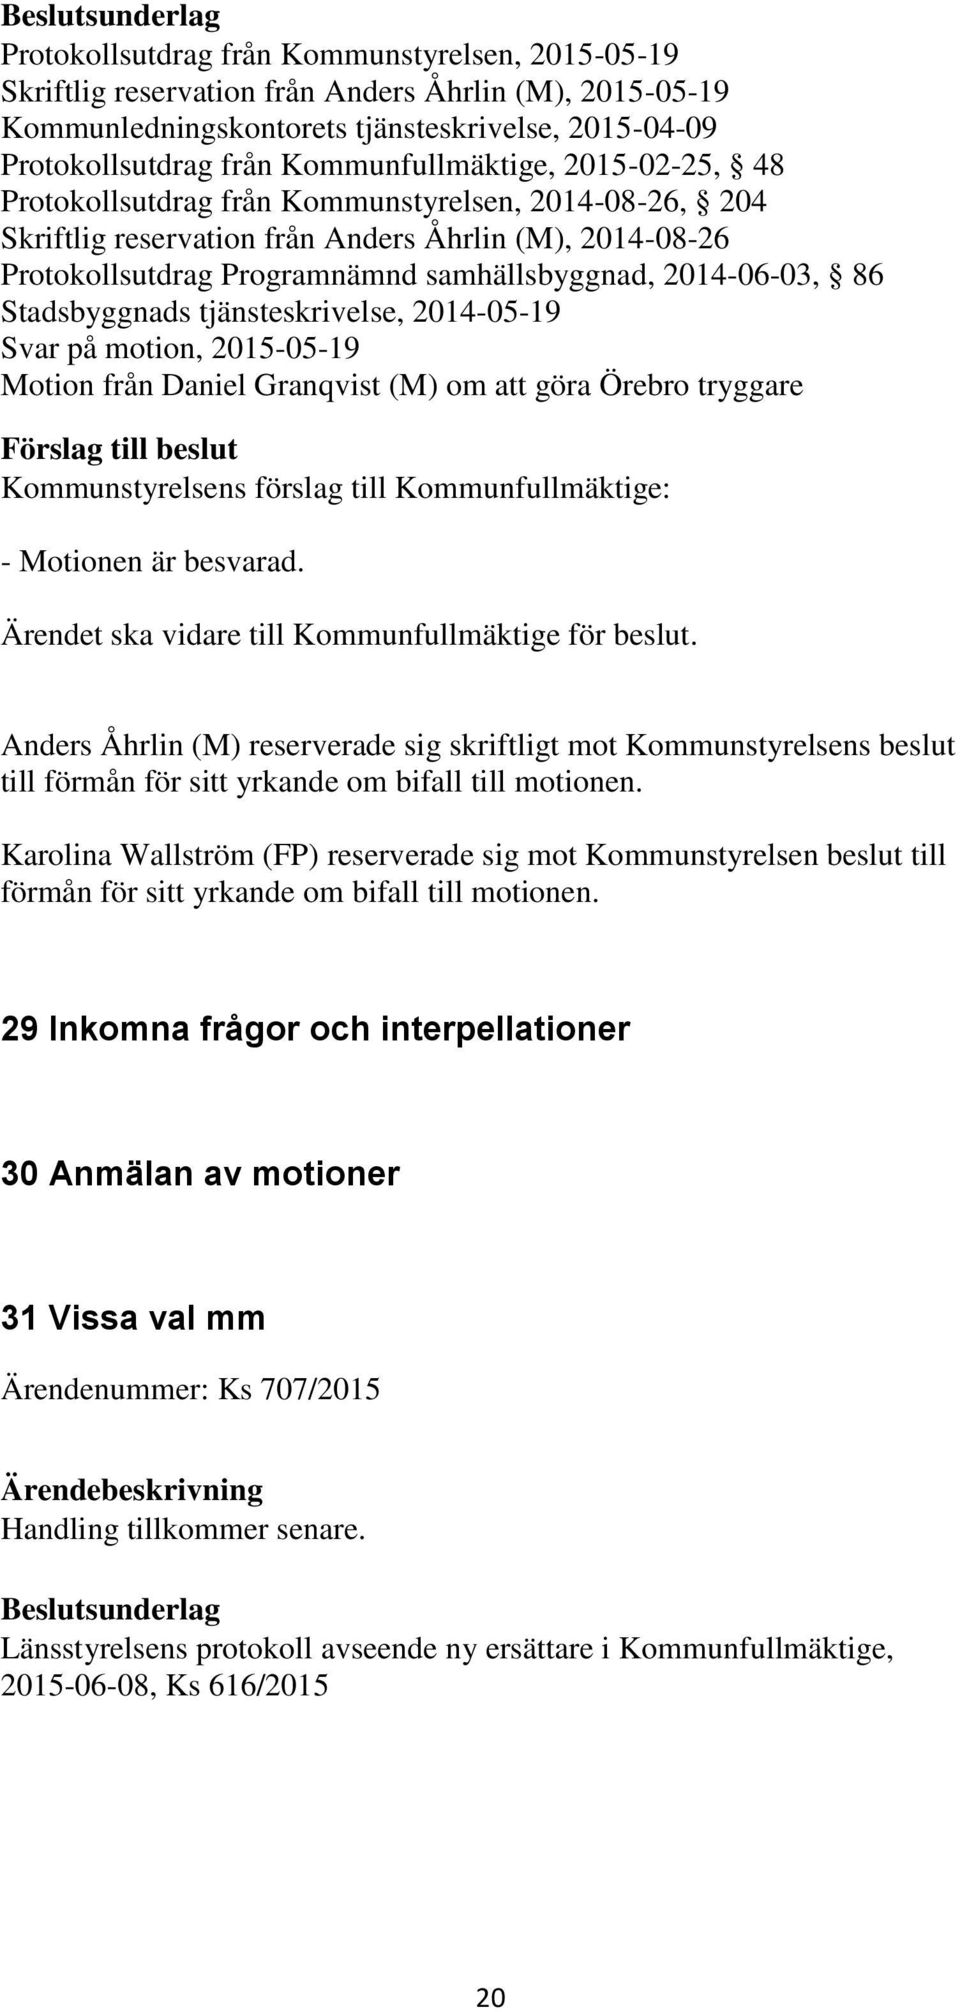 2014-06-03, 86 Stadsbyggnads tjänsteskrivelse, 2014-05-19 Svar på motion, 2015-05-19 Motion från Daniel Granqvist (M) om att göra Örebro tryggare - Motionen är besvarad.